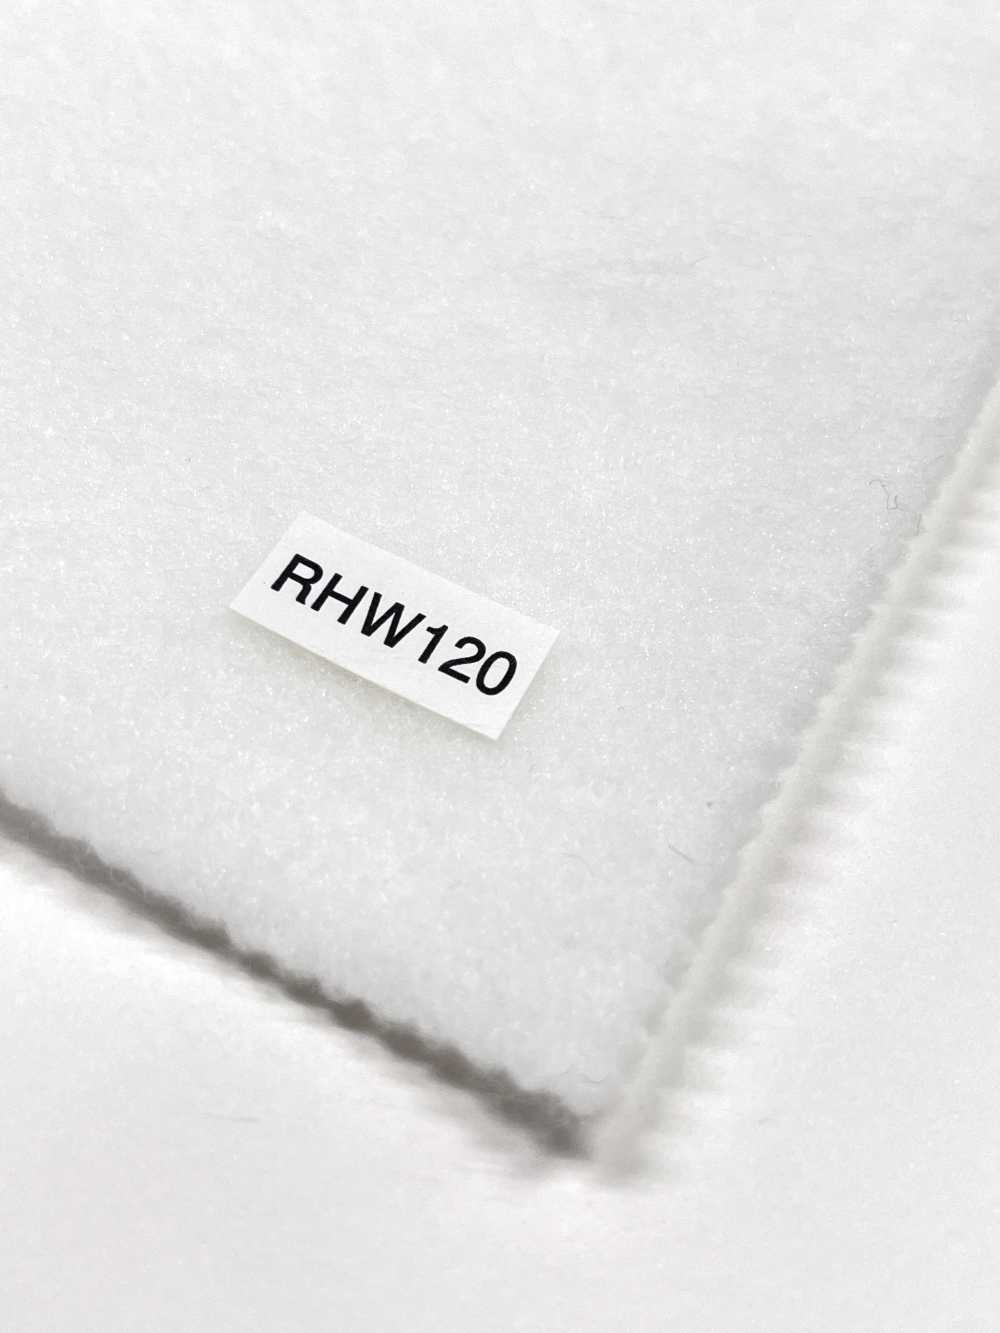 RHW120 Conbel NOWVEN(R) Série Domit Entoilage Thermocollant Type Souple Conbel